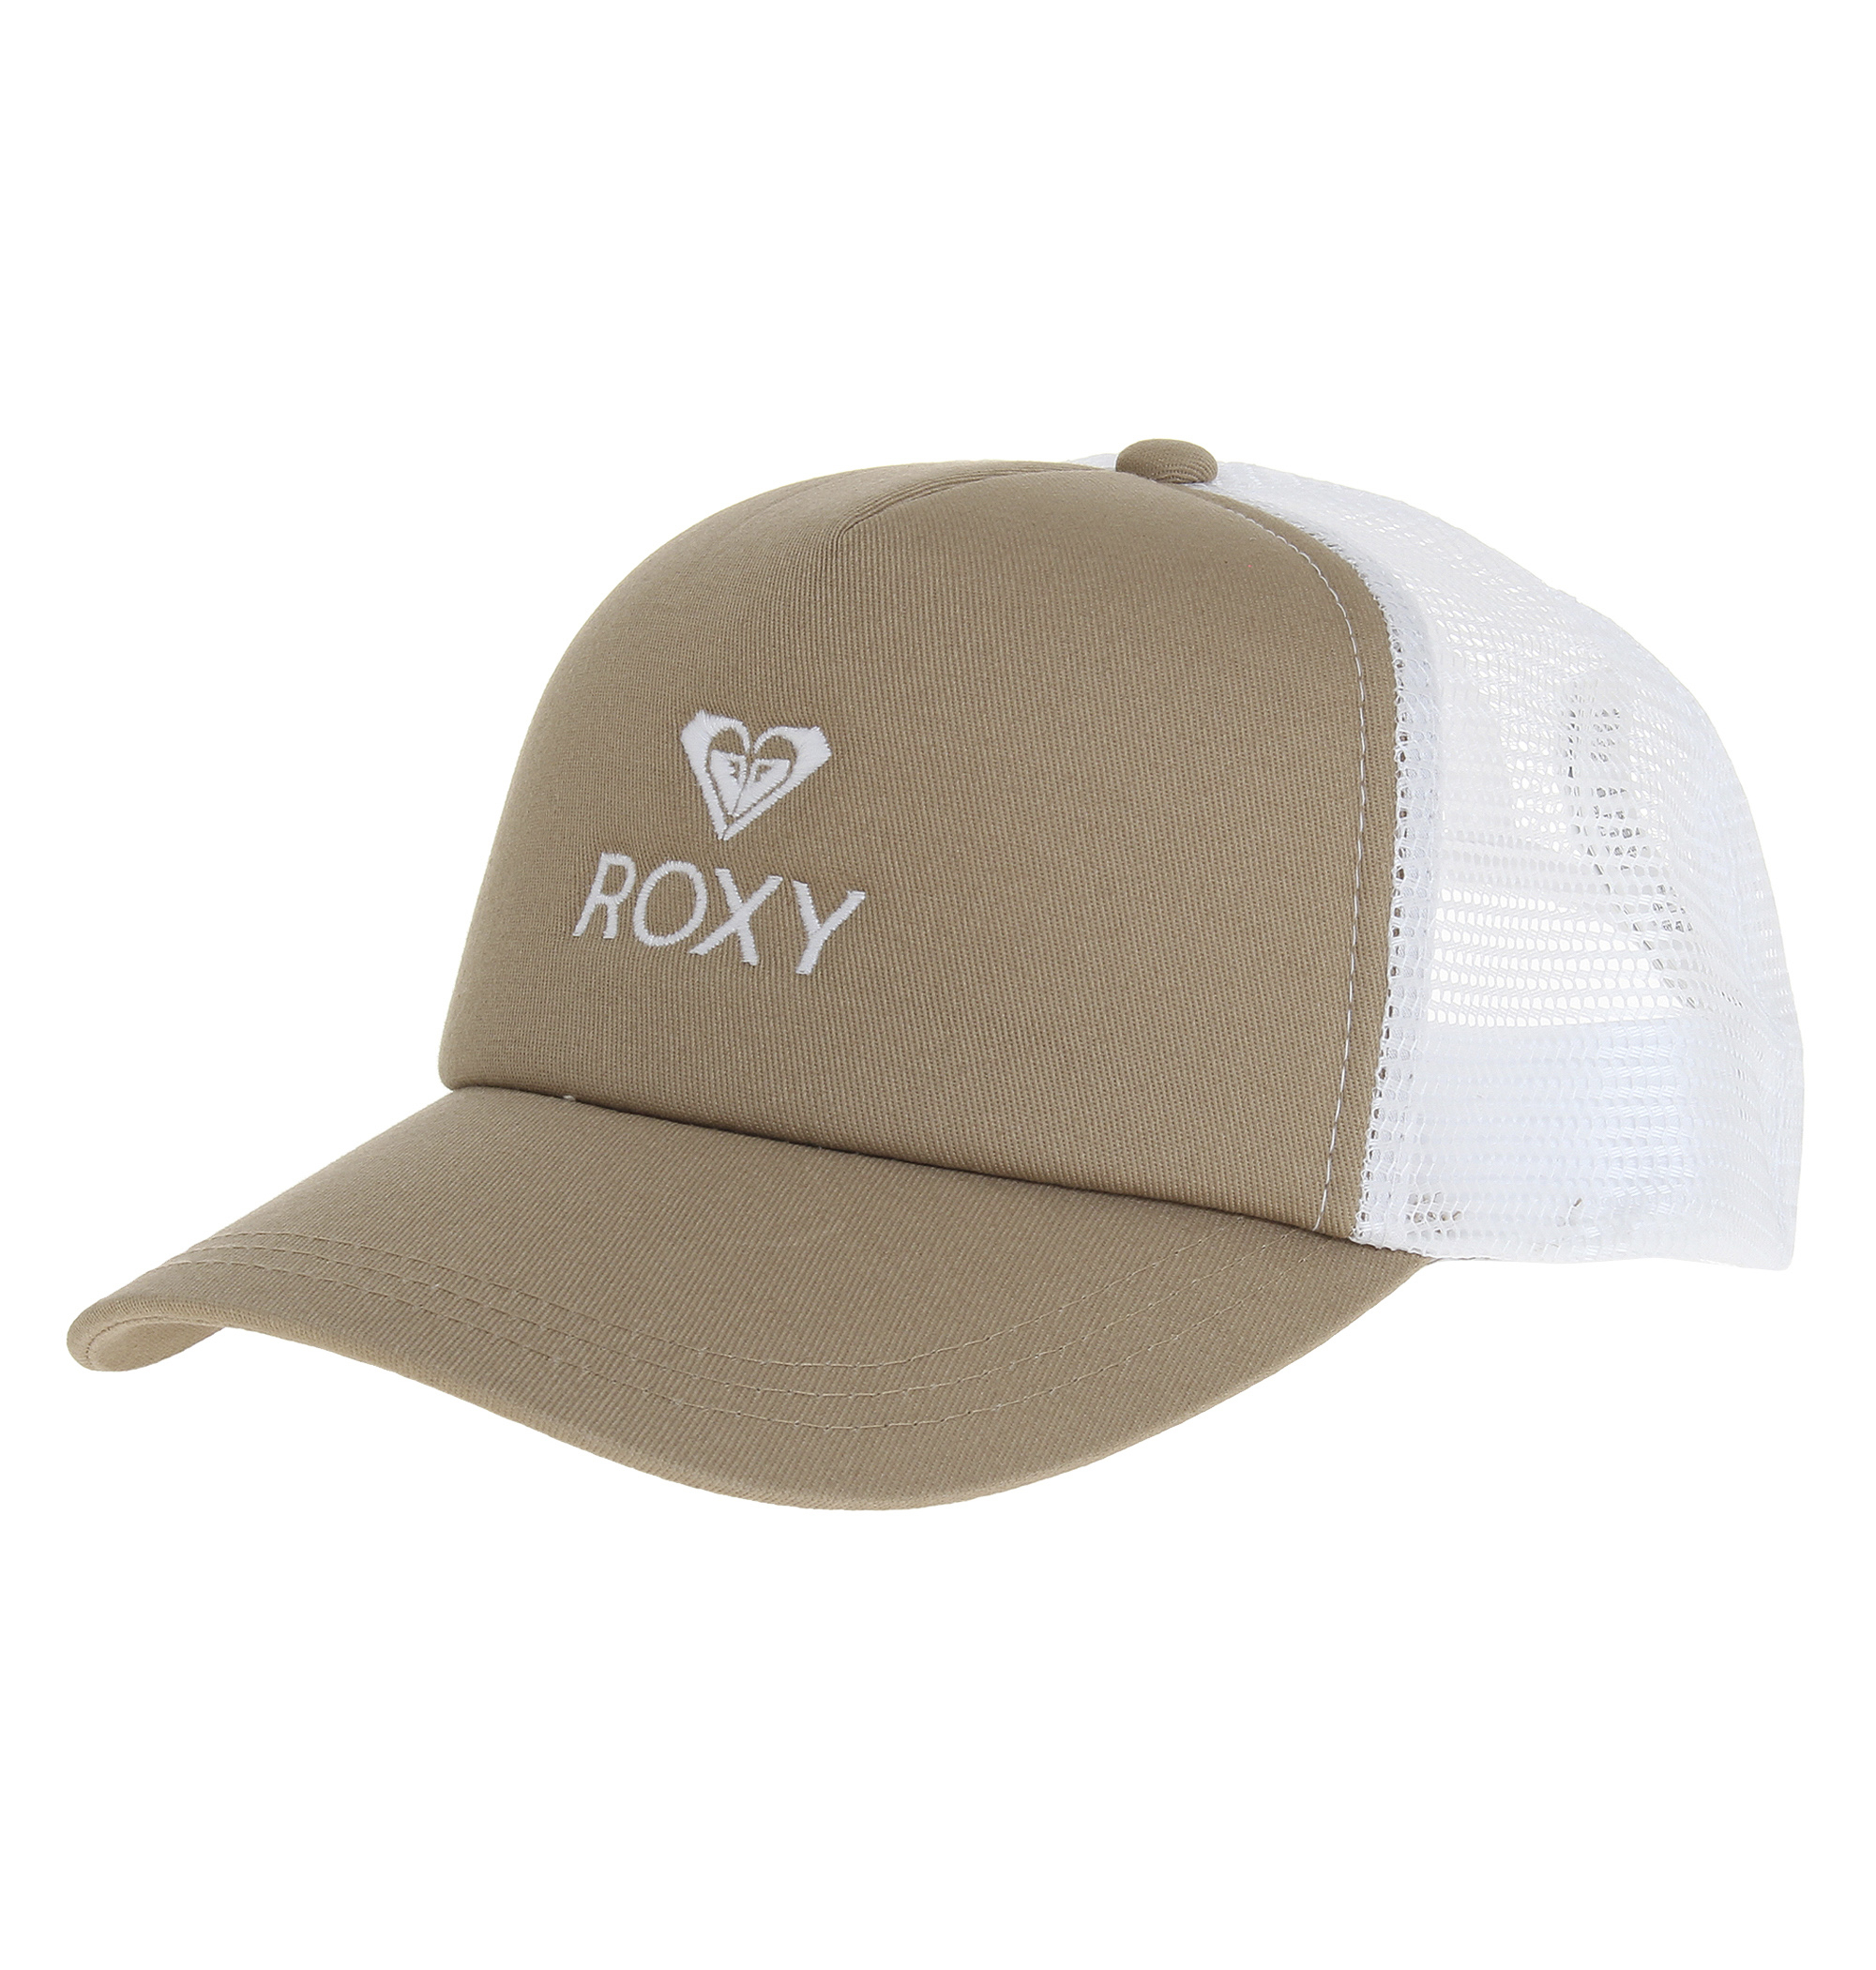 ＜Roxy＞YOURS フロントのブランドアイコンとロゴがさりげないアクセントのスポーティなキャップ画像